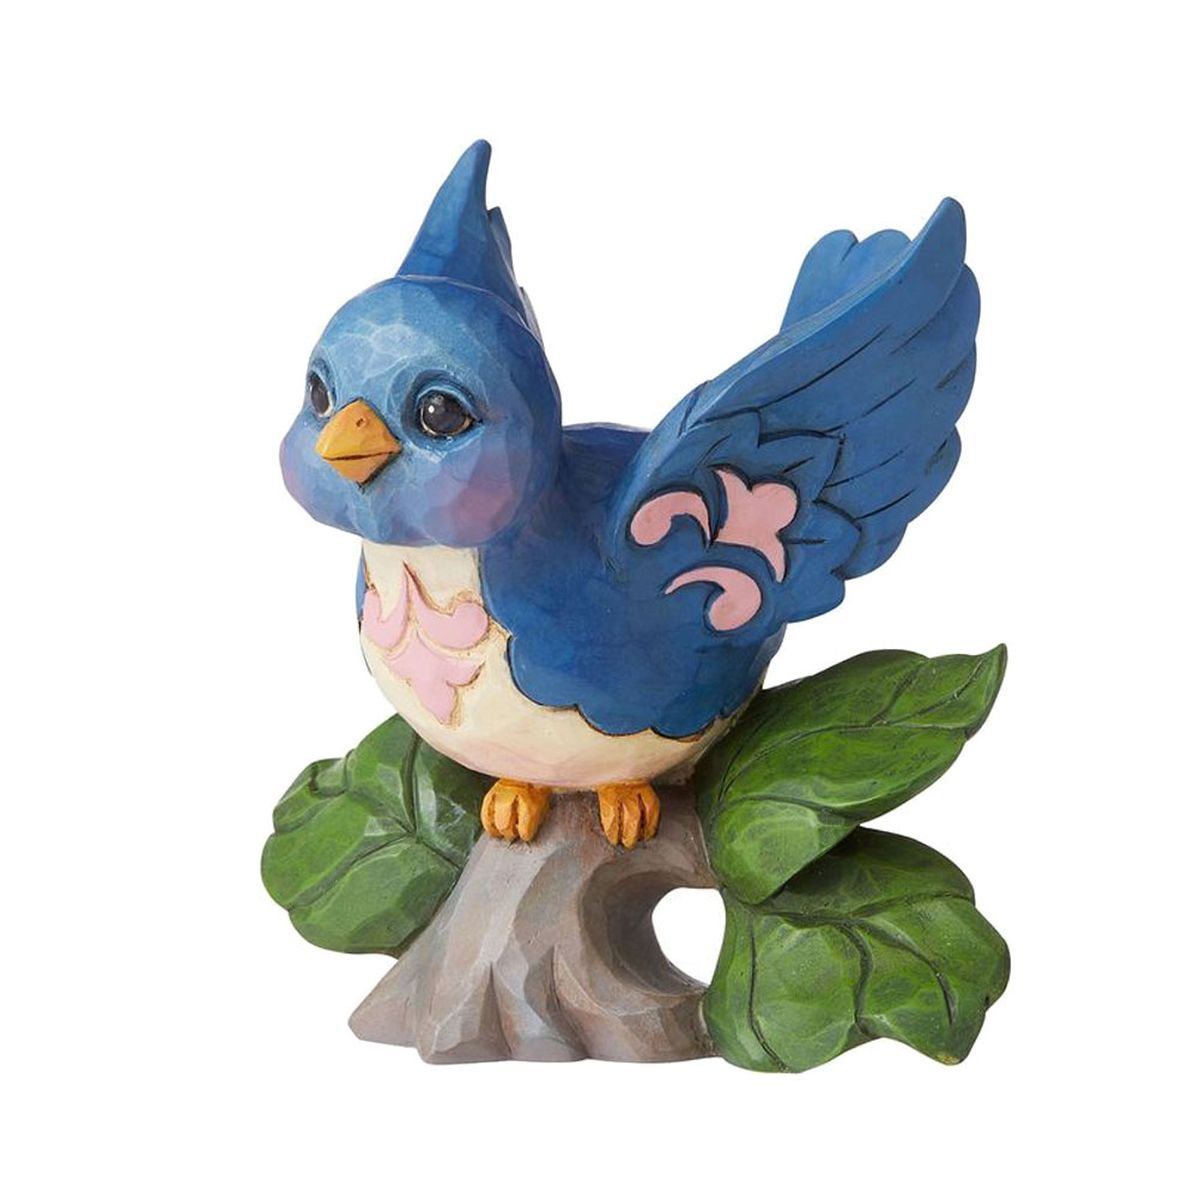 Mini Bluebird statuette by Jim Shore